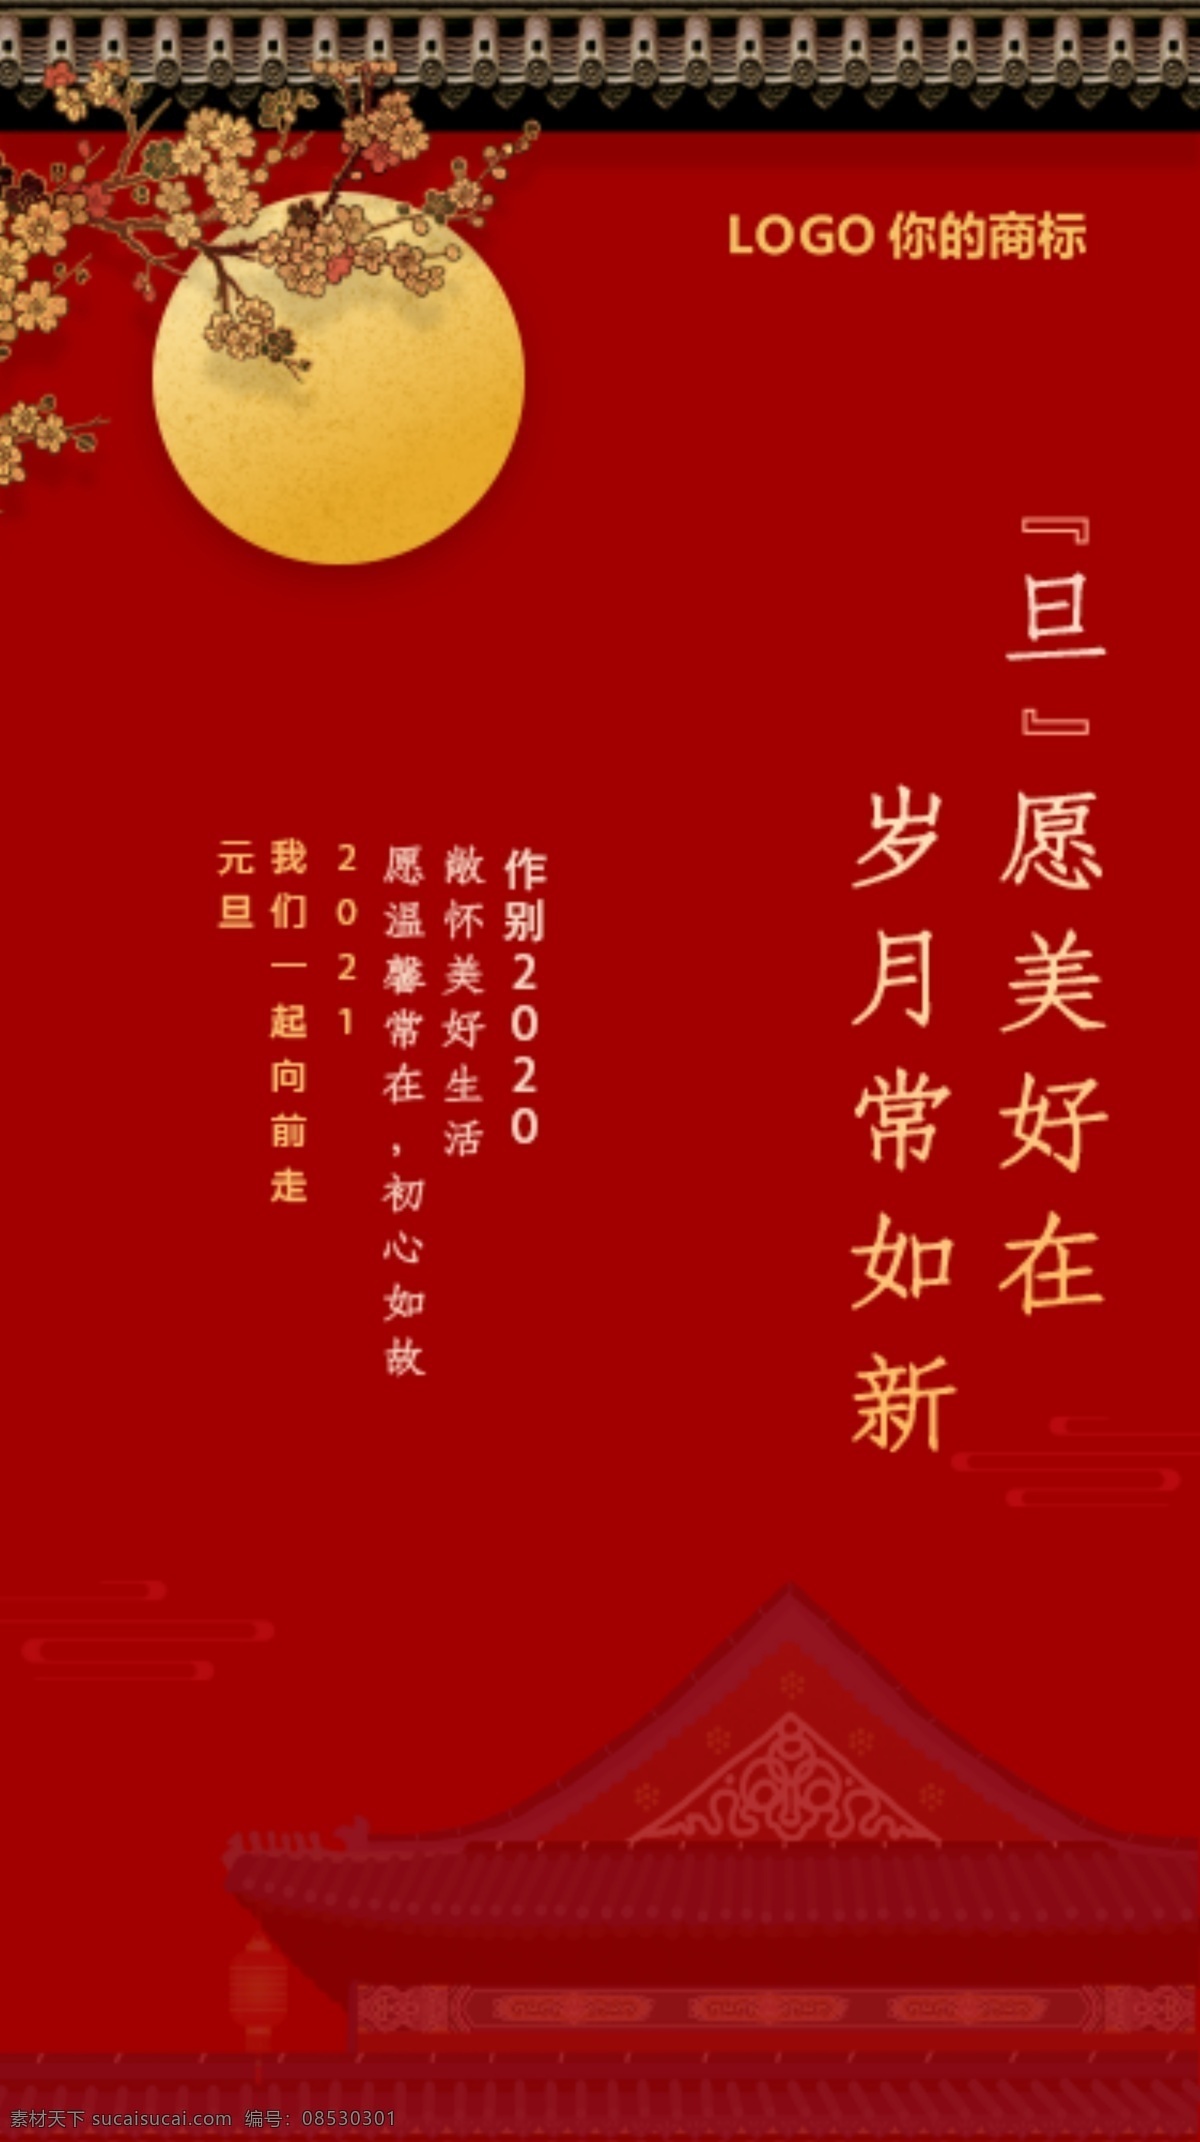 元旦 新年 红色 喜庆 中国风 节日 节气 单页 宣传 传单 祝福 底图 月圆 月亮 传统节日